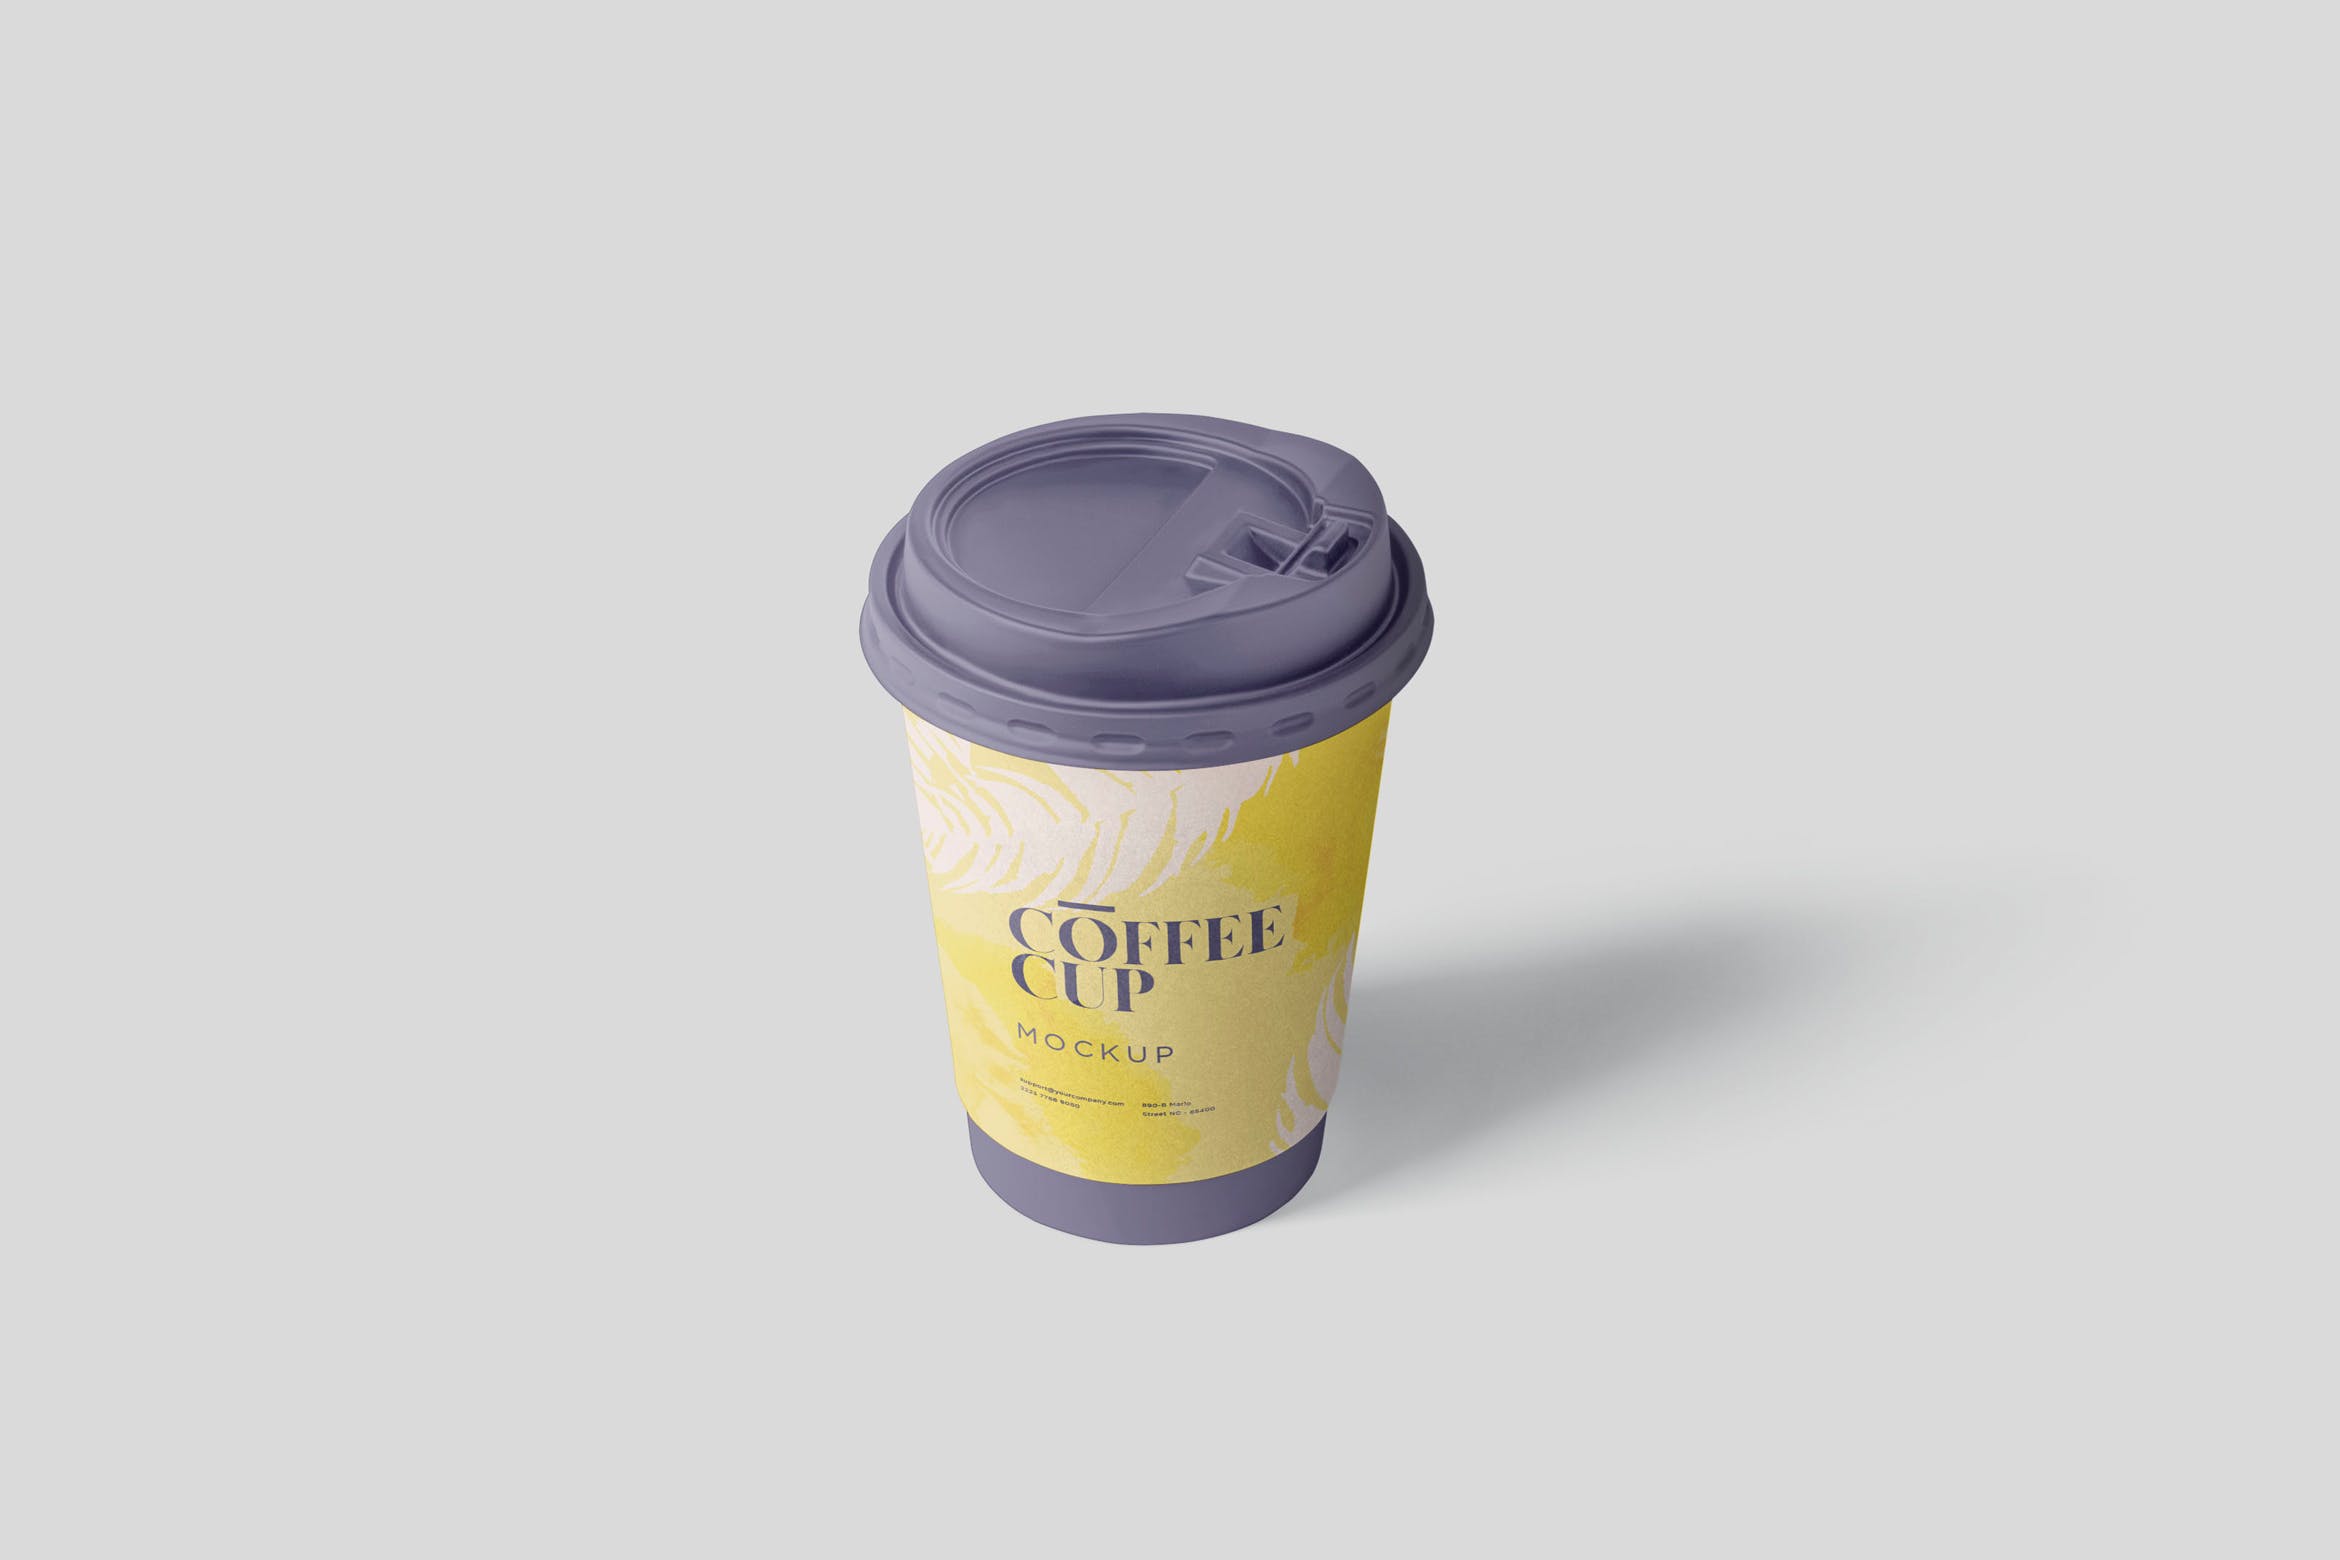 咖啡一次性纸杯设计效果图素材库精选 Coffee Cup Mockup插图